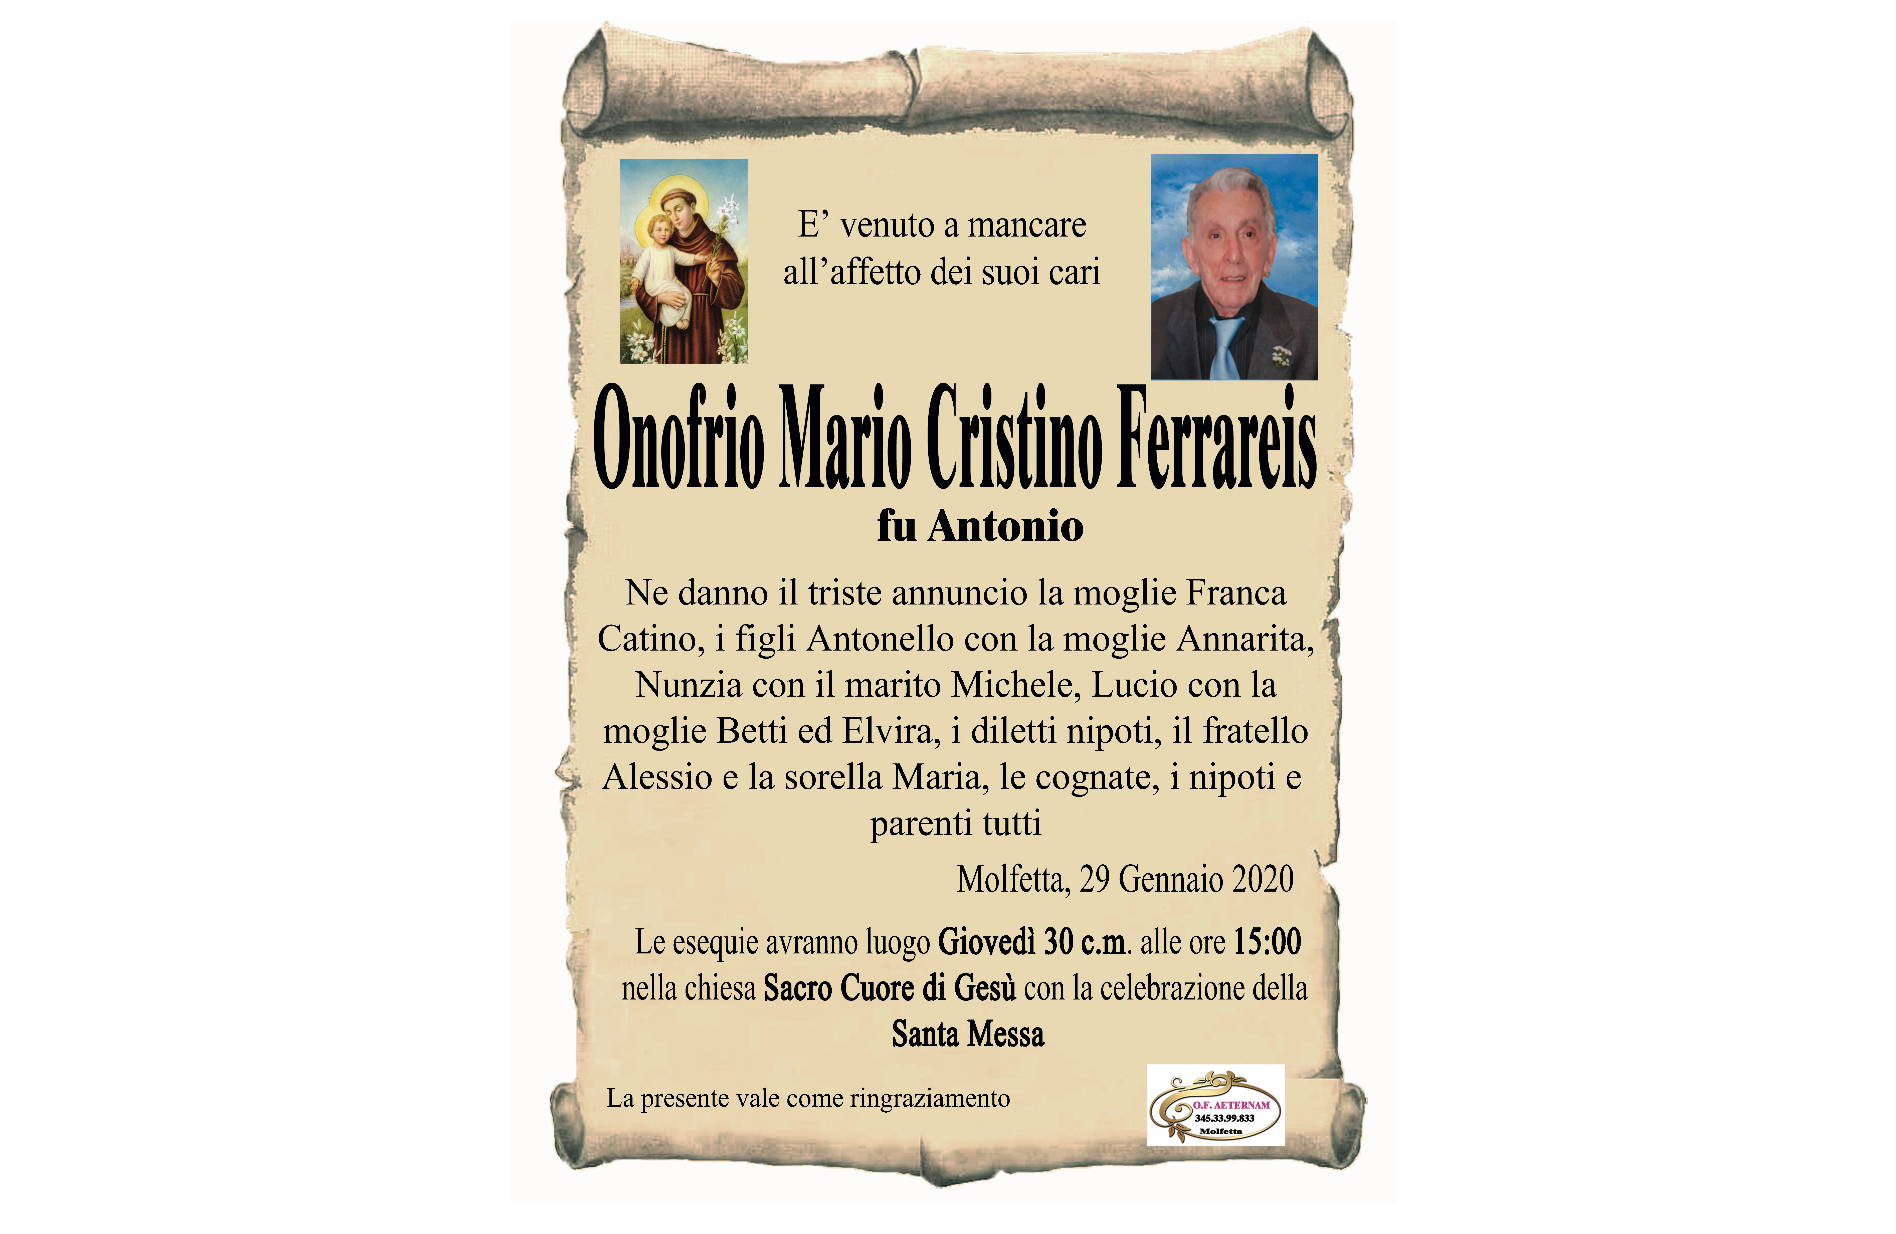 Onofrio Mario Cristino Ferrareis